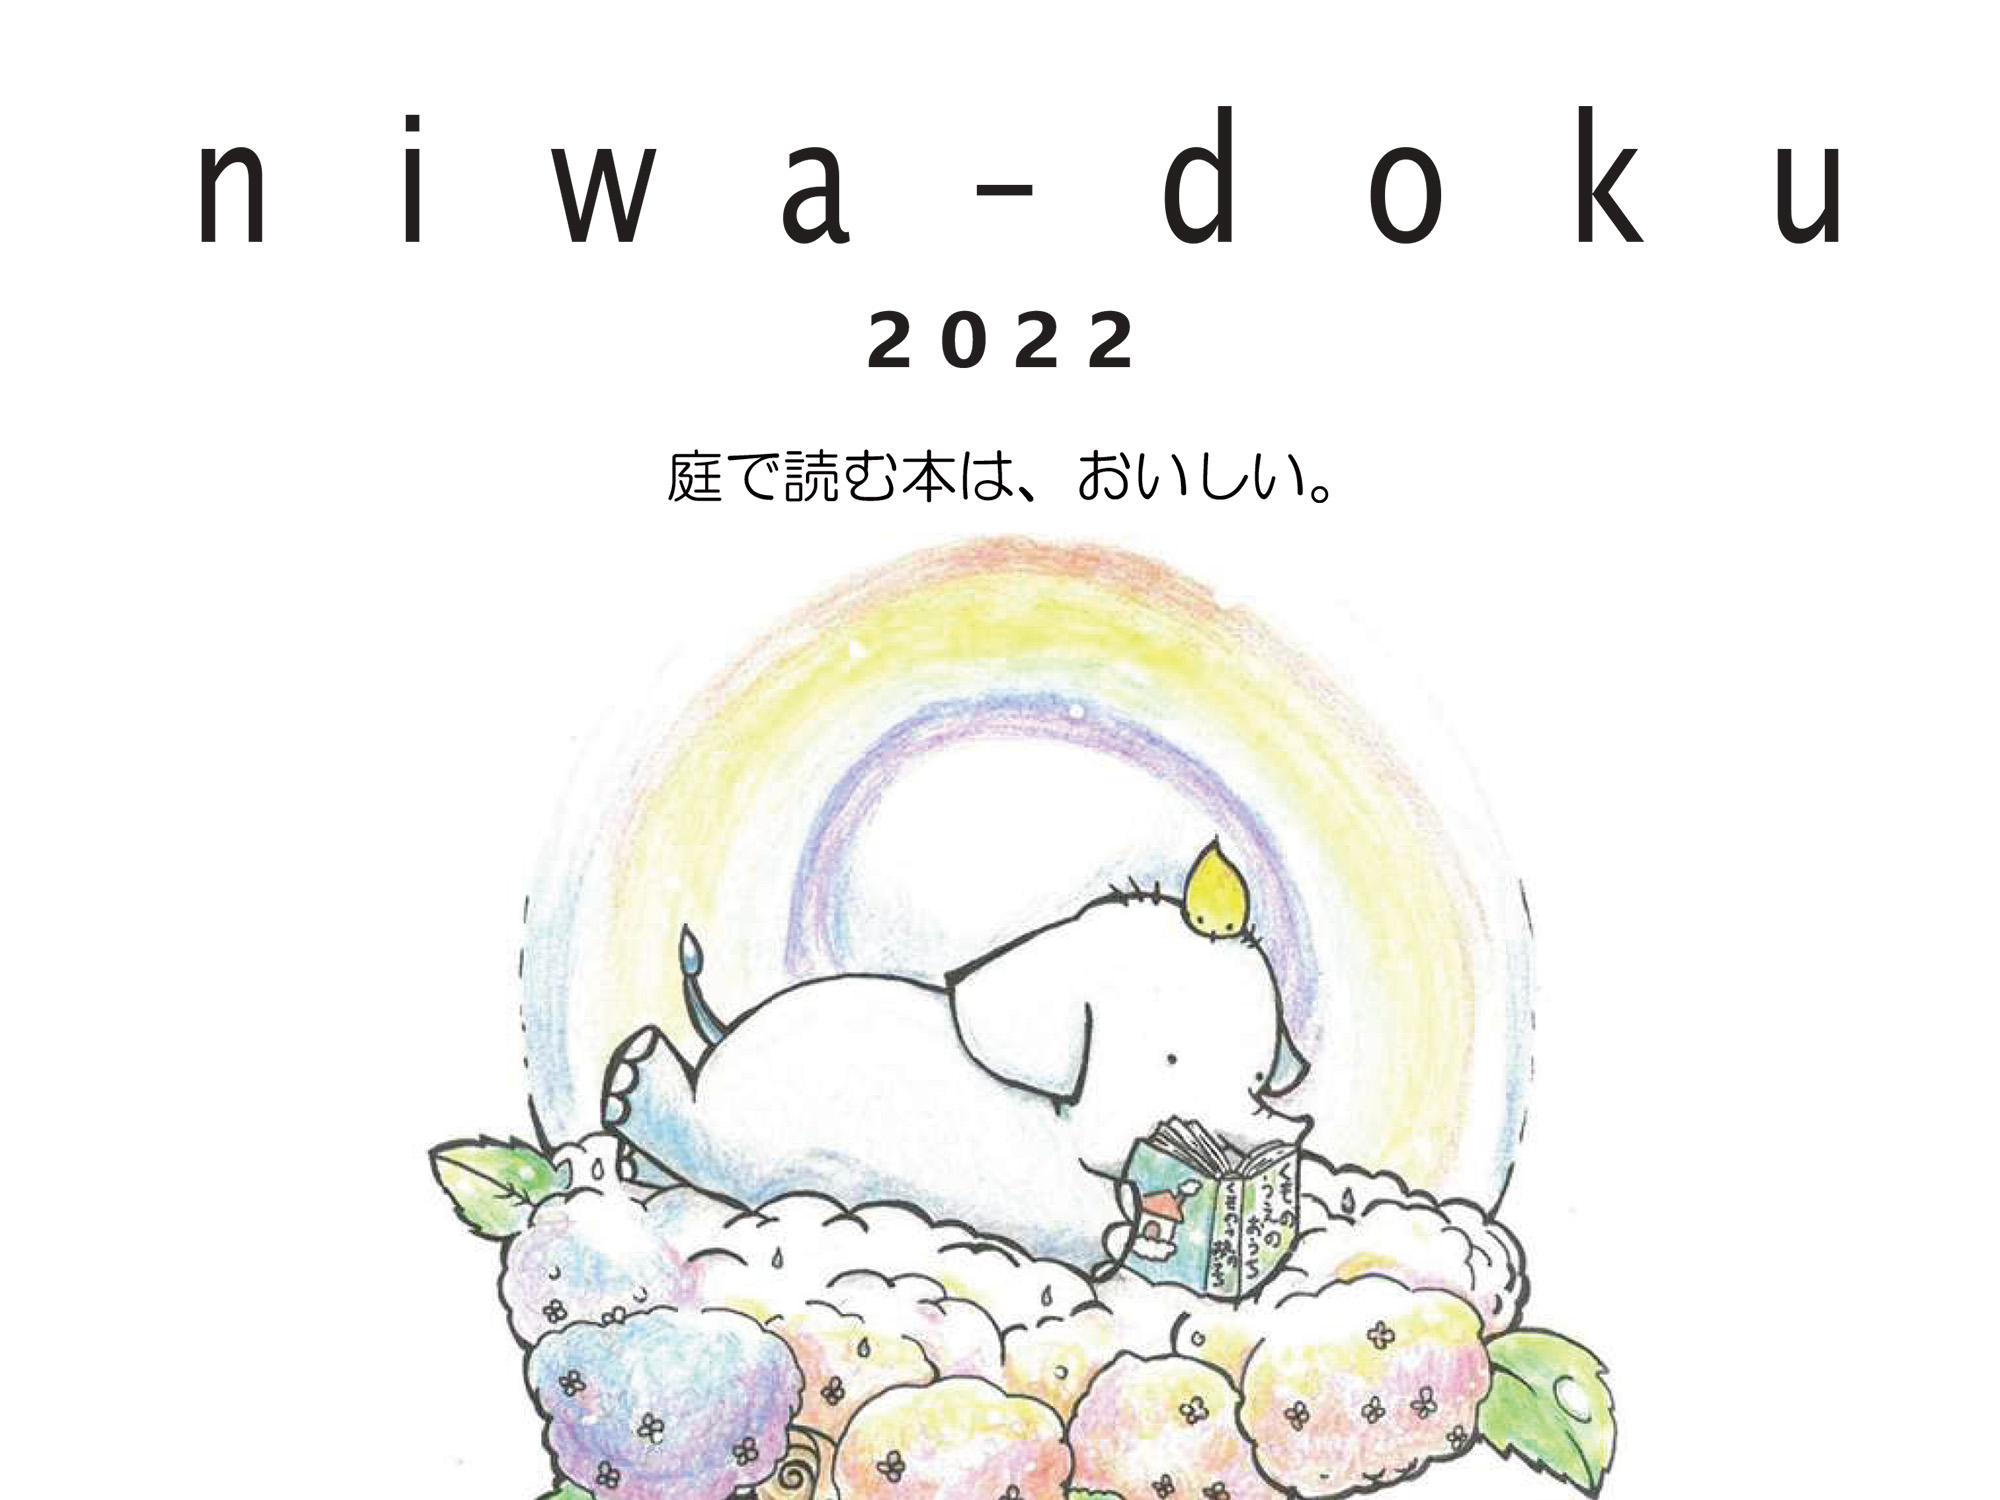 2022年6月5日 庭で本を読むイベント「niwa-doku」、開催！